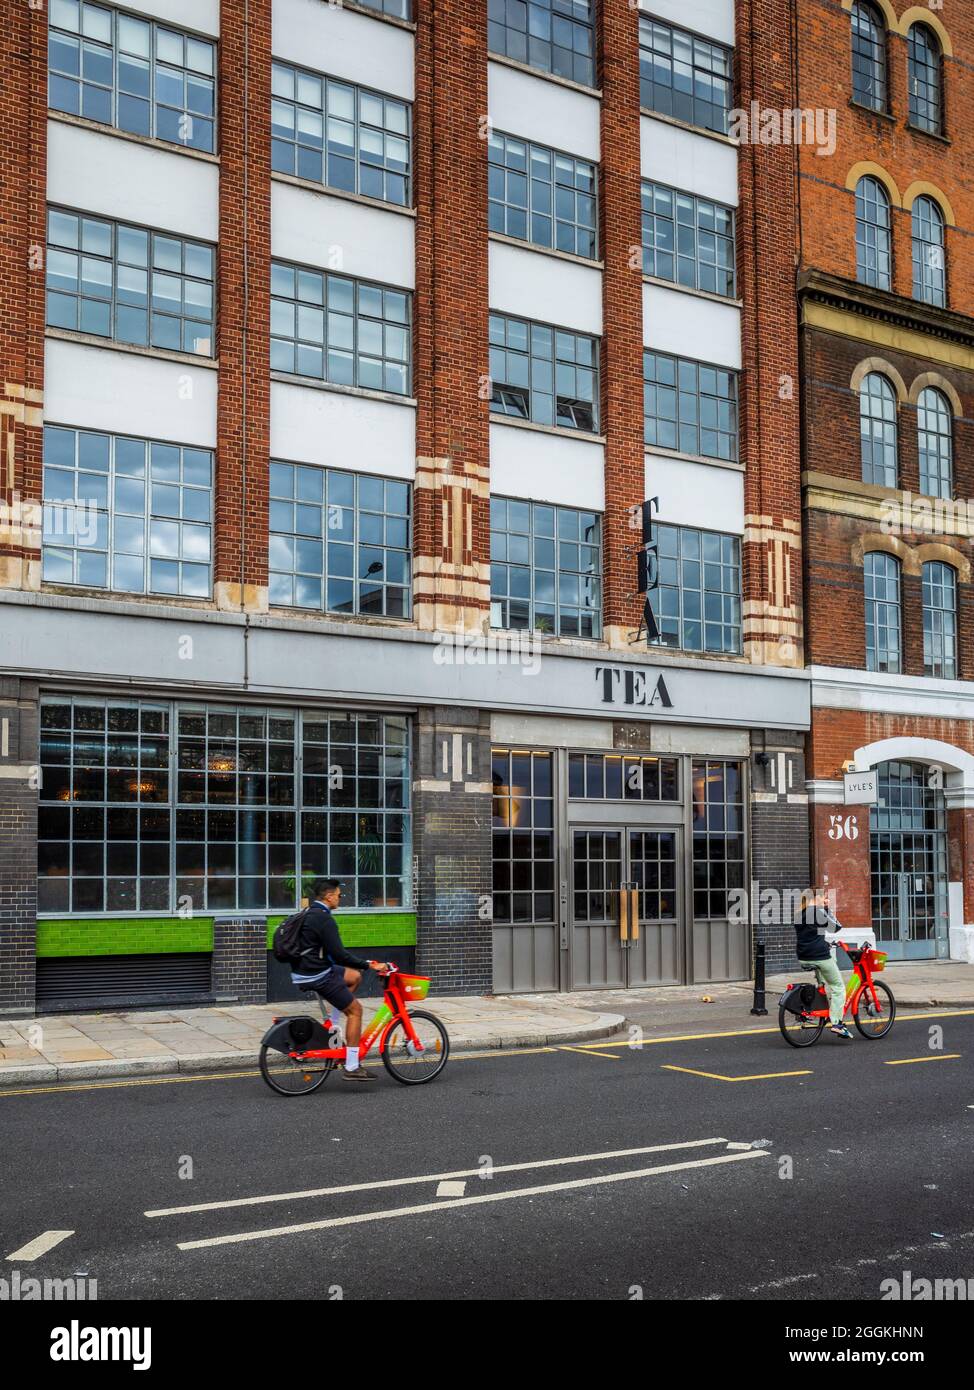 Le Tea Building Shoreditch London, situé au 56 Shoreditch High St., a ouvert ses portes en 1933 en tant qu'usine de Liptons Tea, aujourd'hui une plaque tournante pour les industries de la technologie et de la création. Banque D'Images